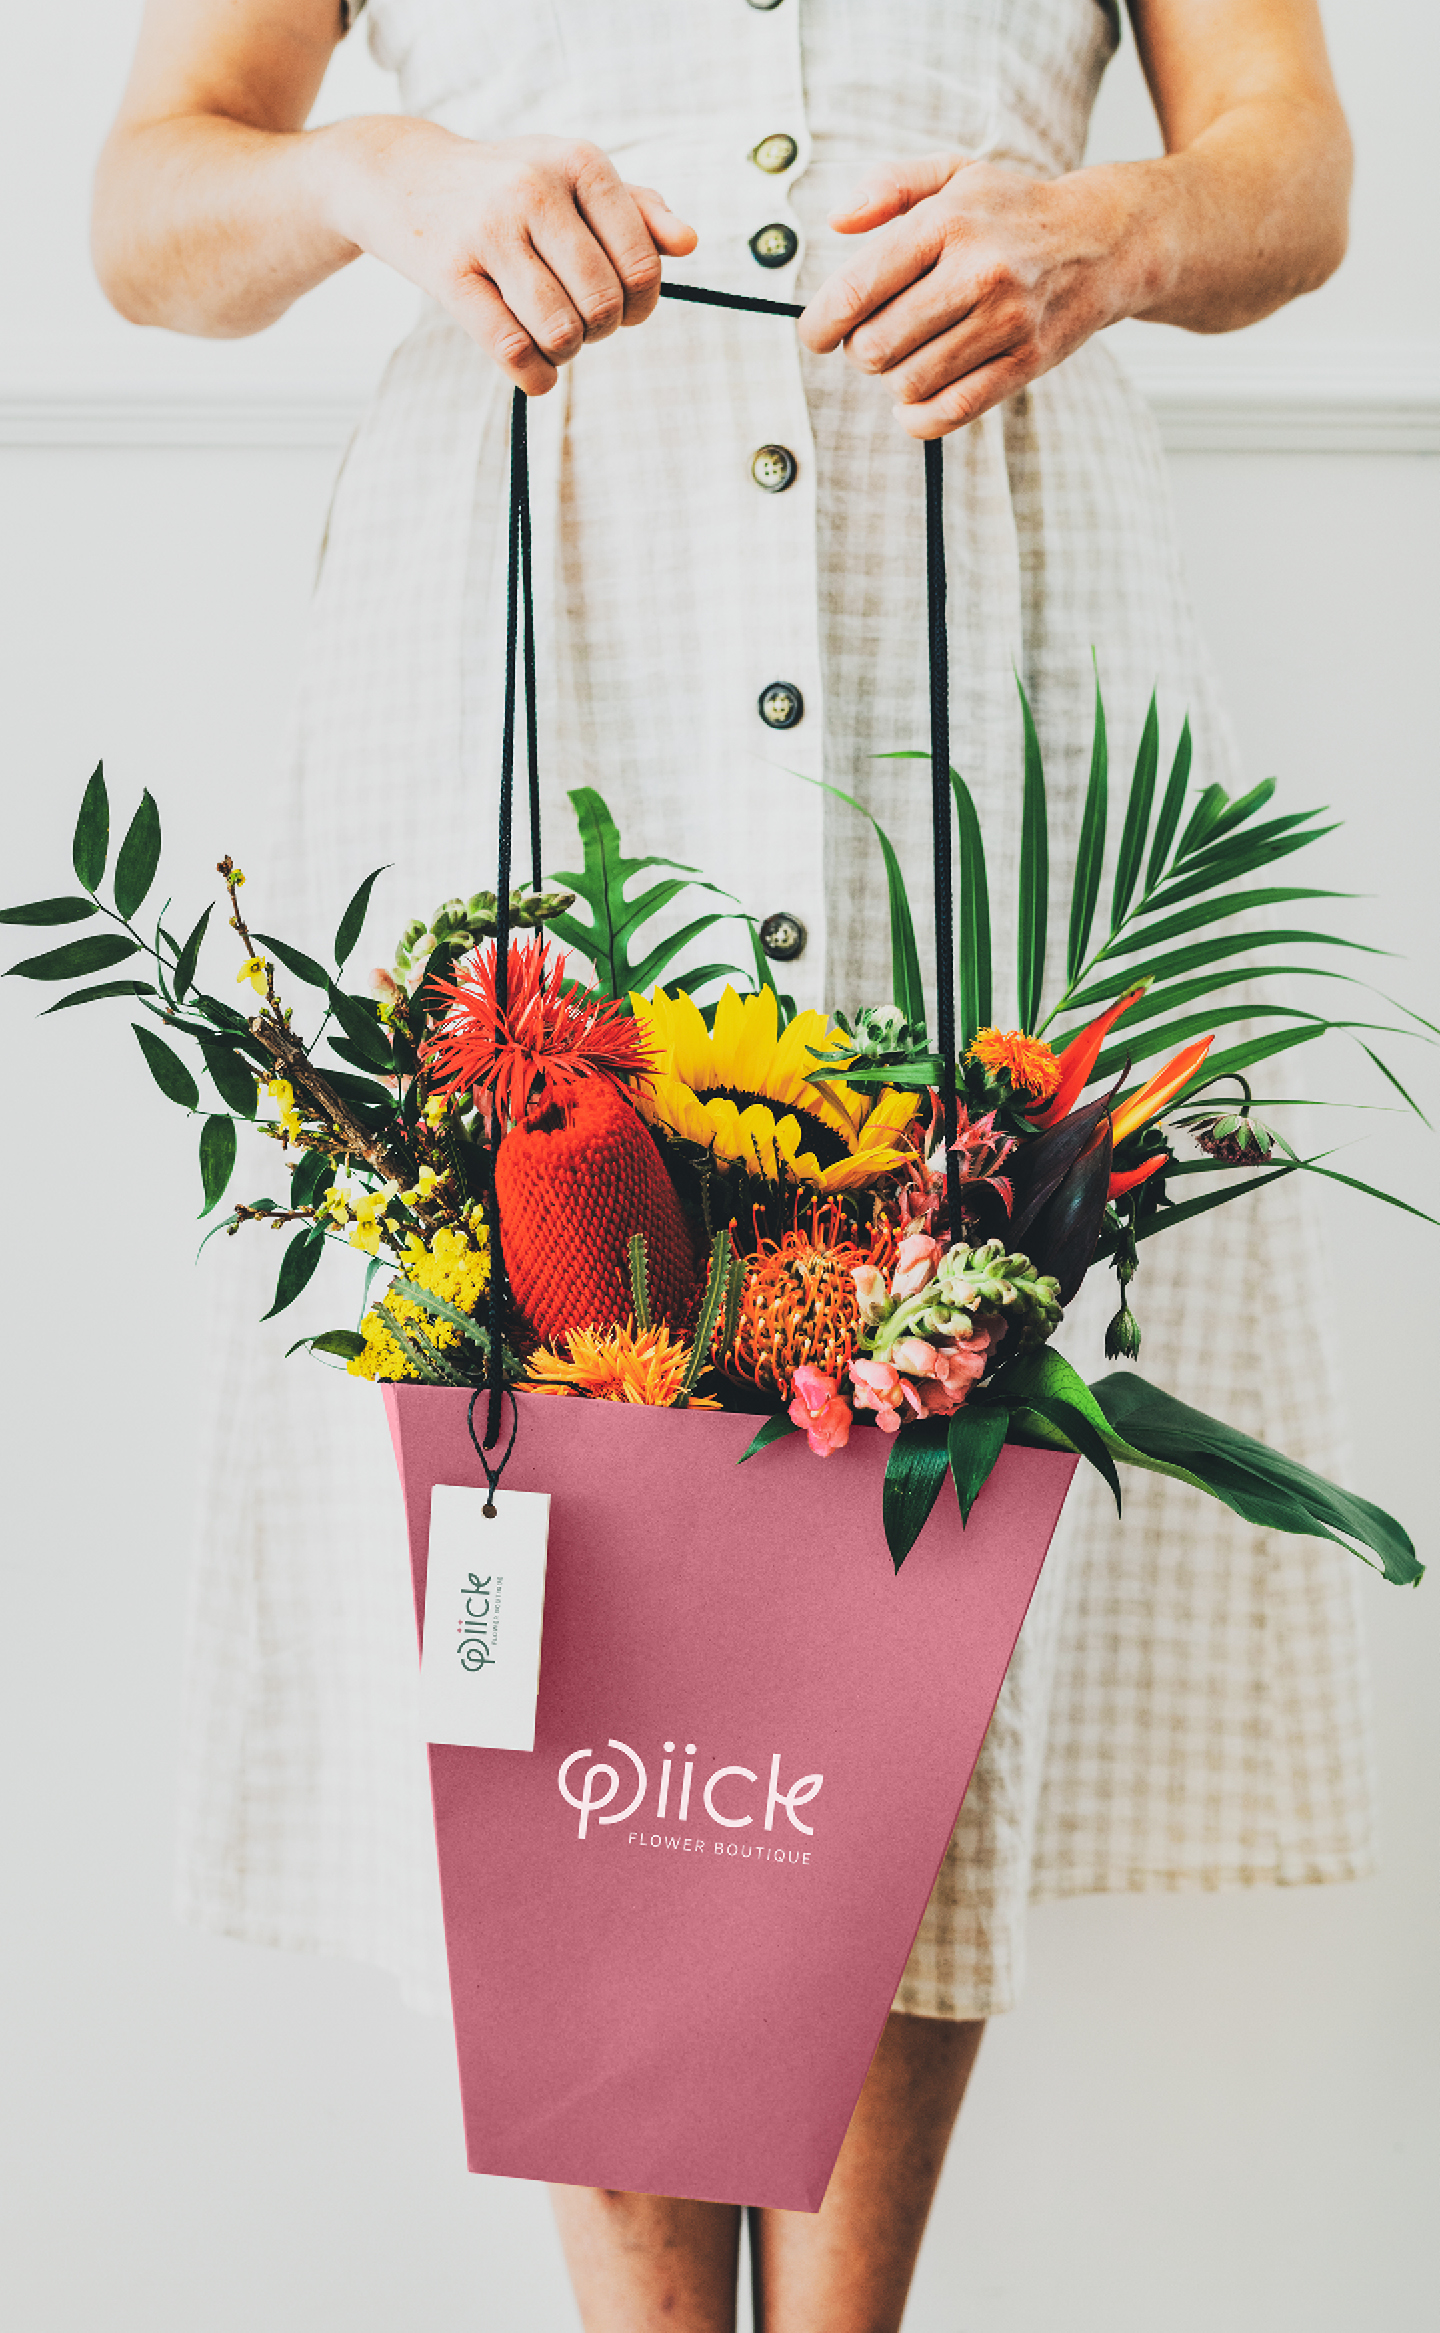 Pick-Flower-Boutique-09